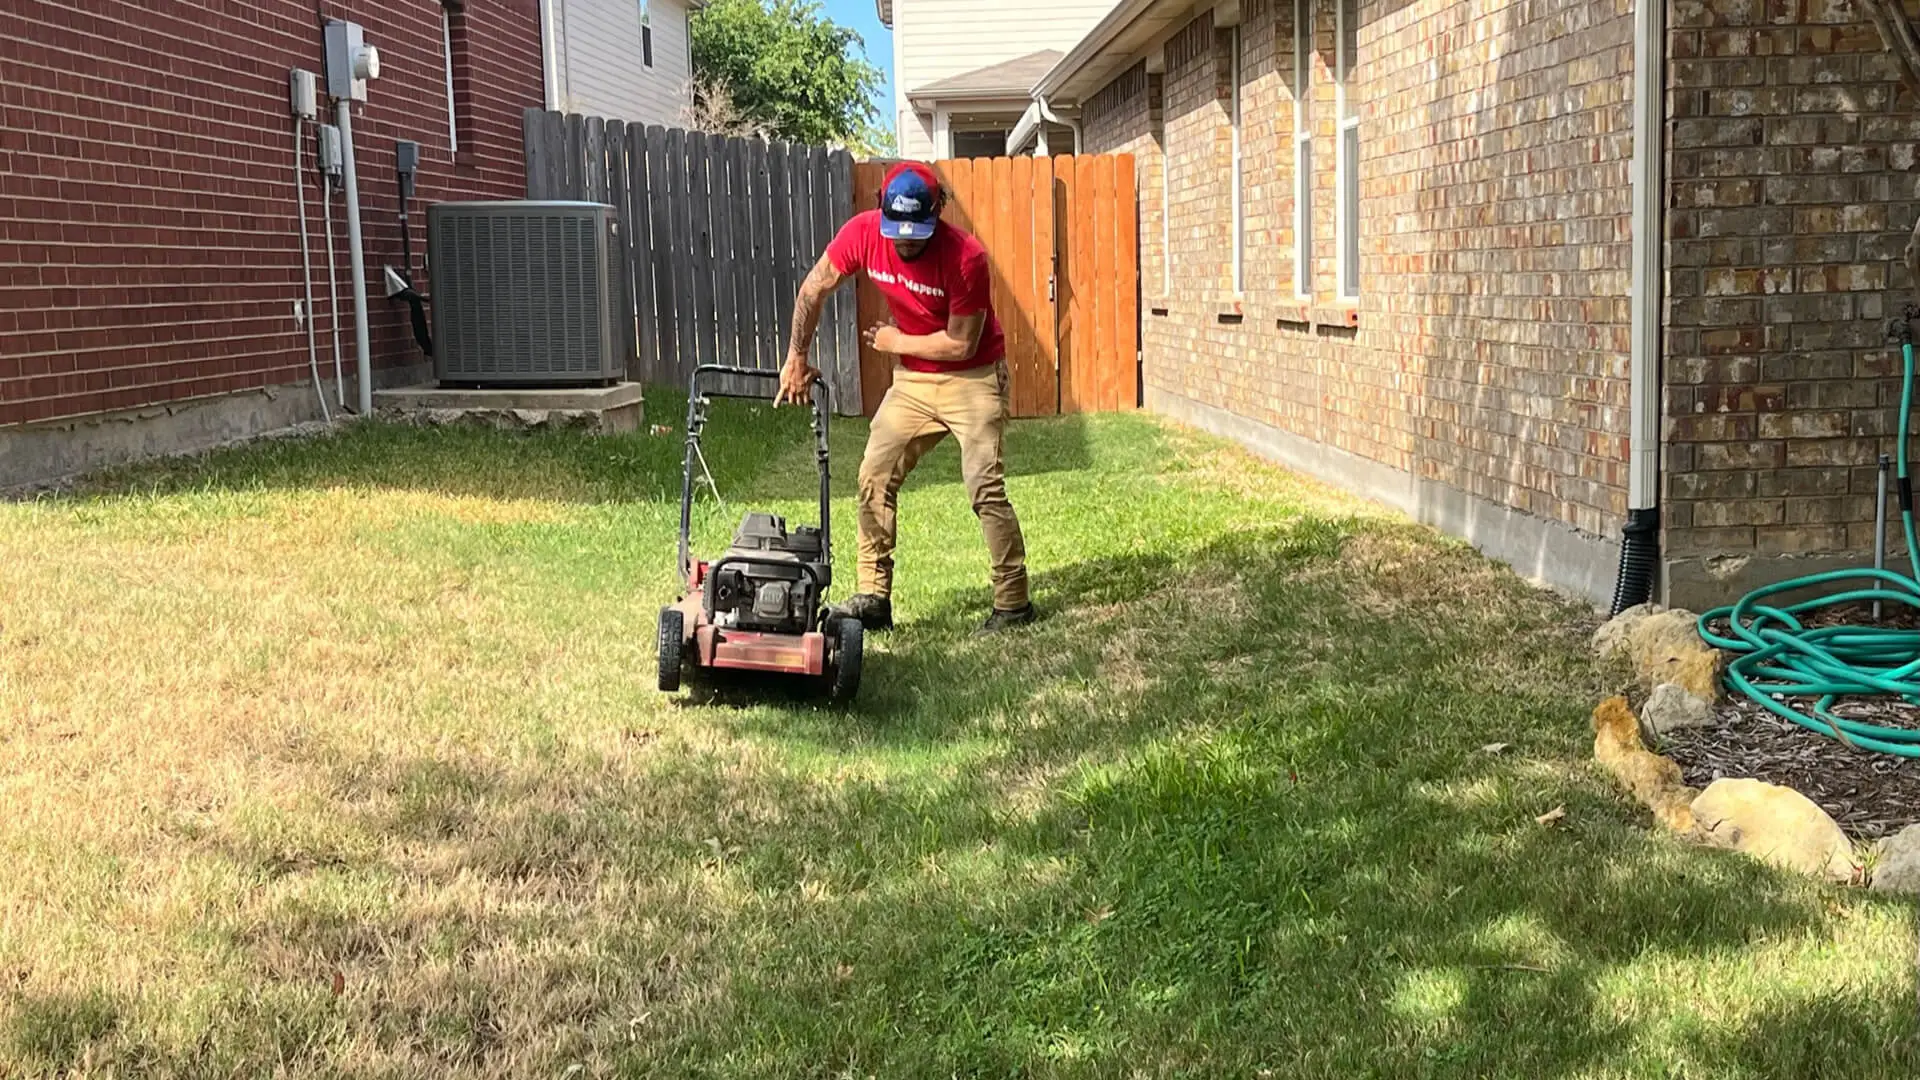 Buffalo Outdoor worker mowing a lawn in Keller, Texas.